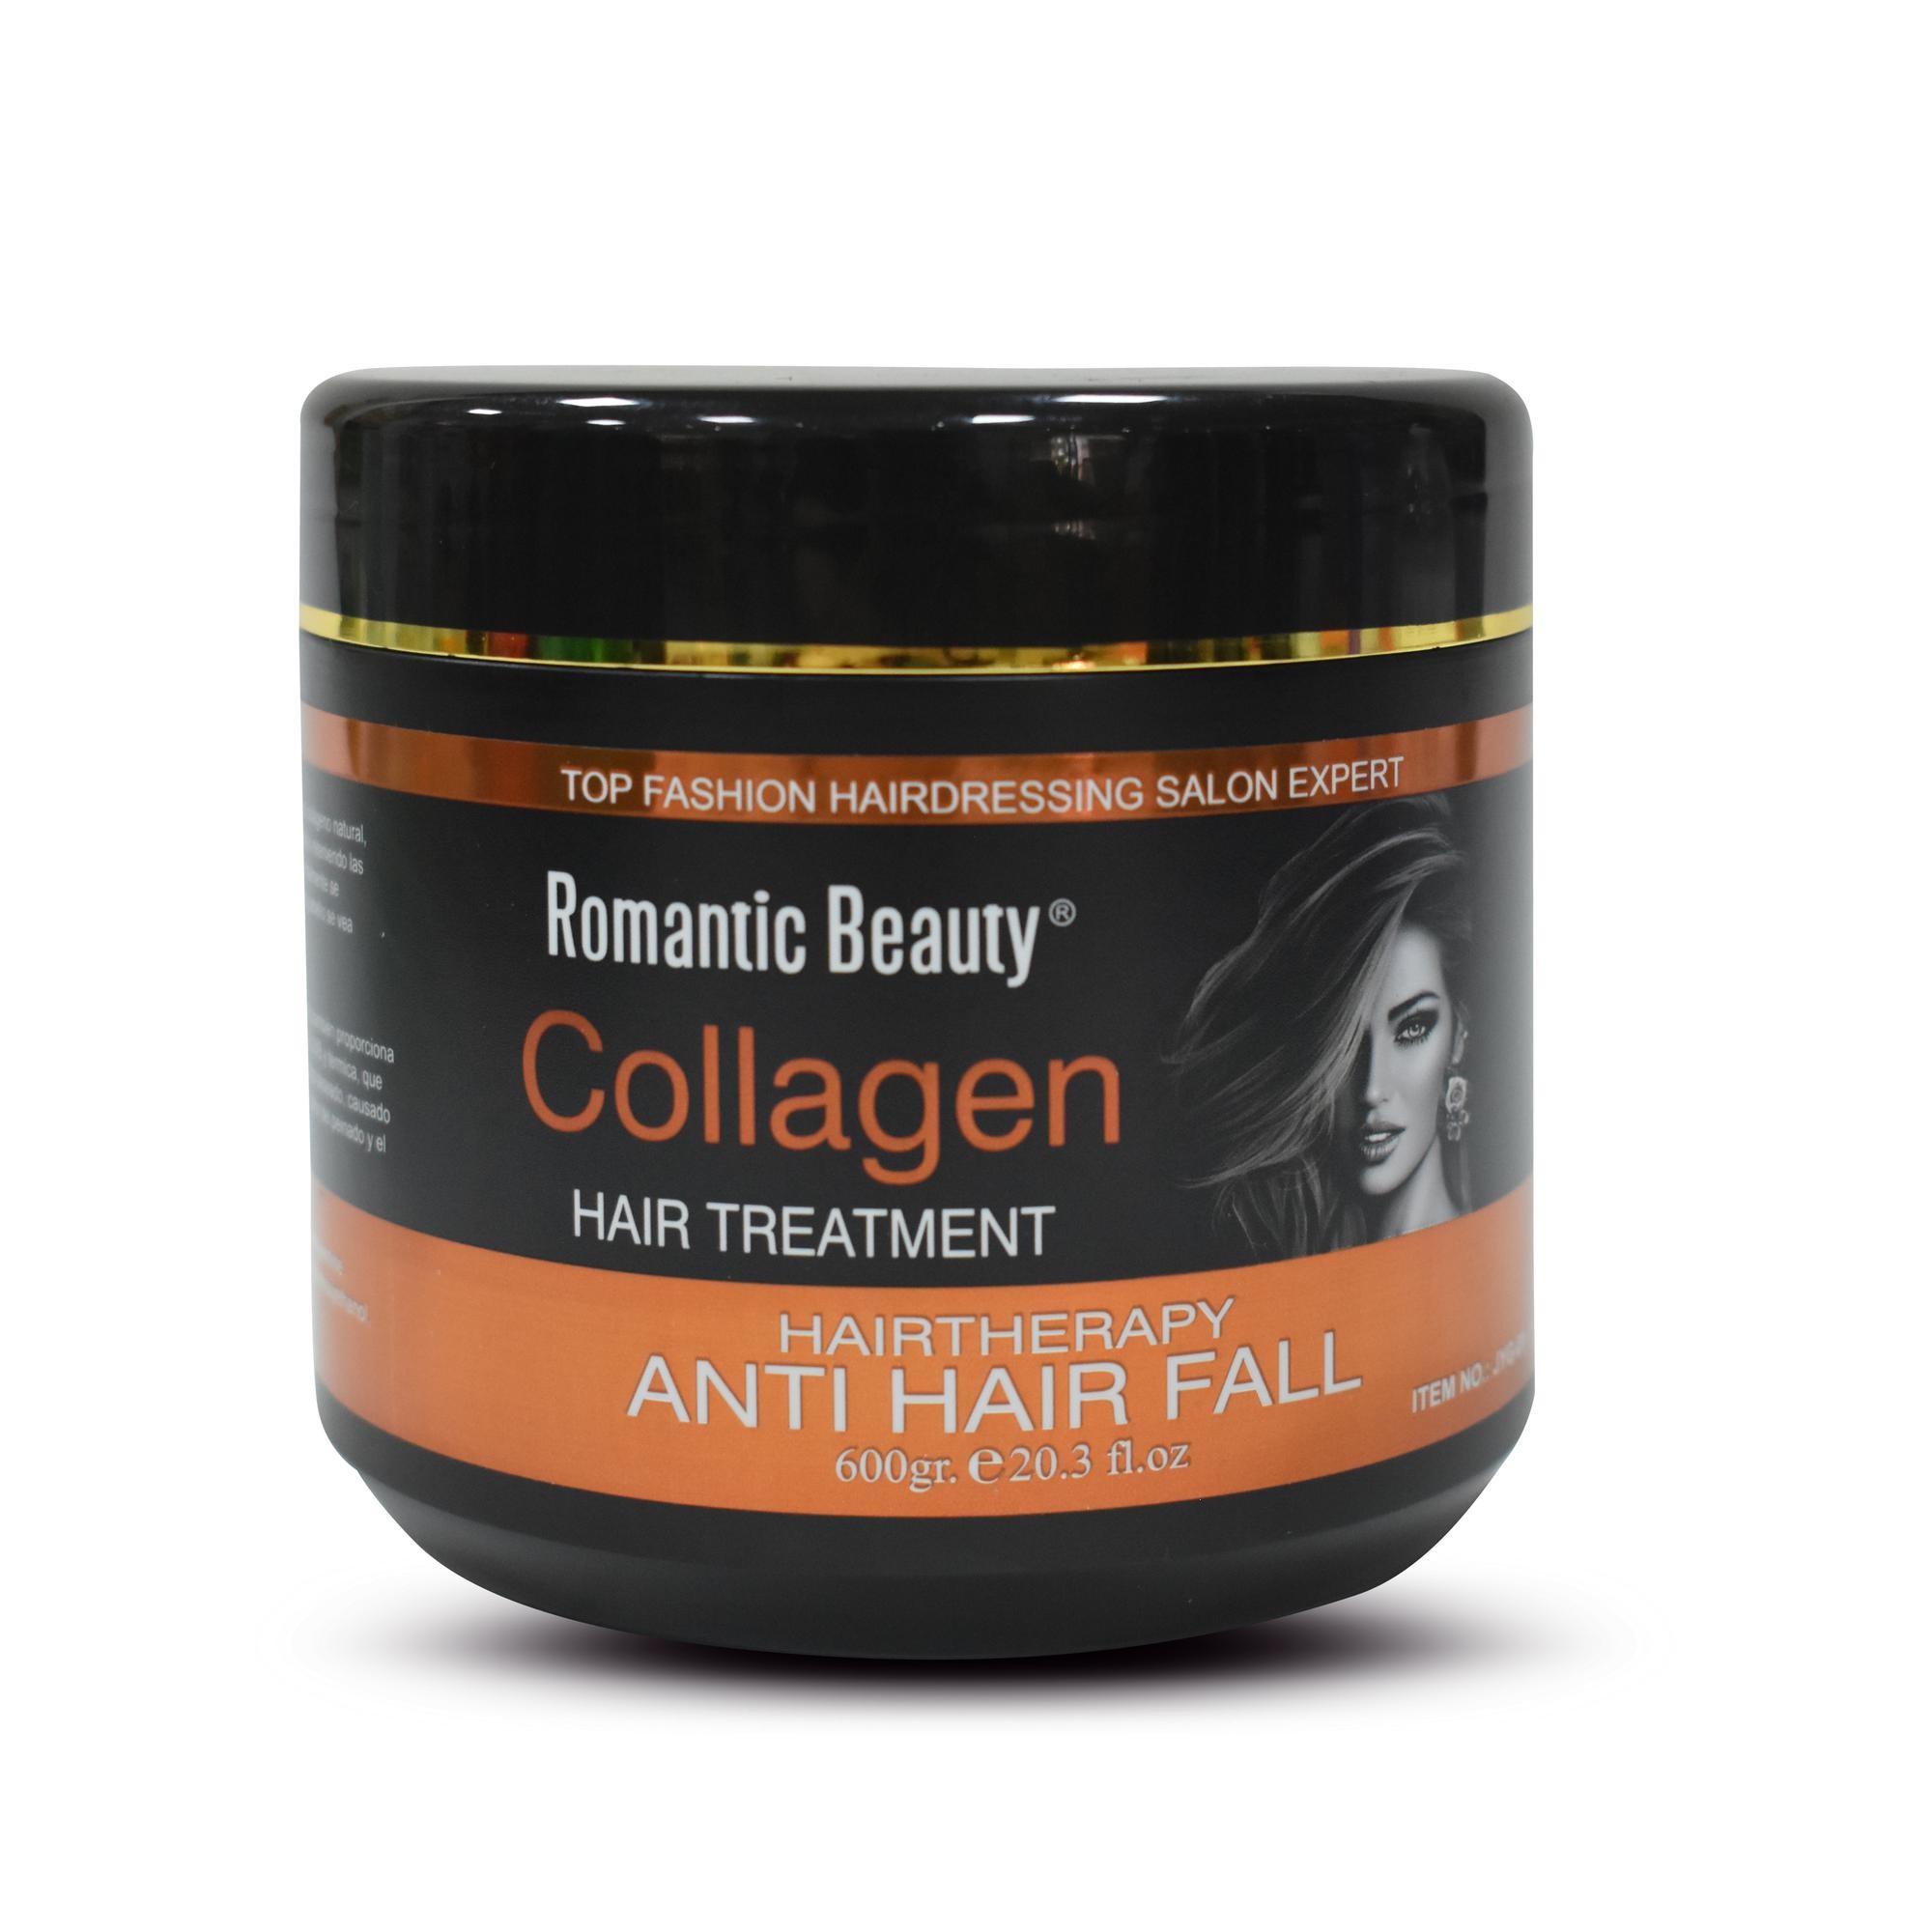 HAIRTHERAPY Collagen Hair Treatment  Anti Hair Fall. 600GR